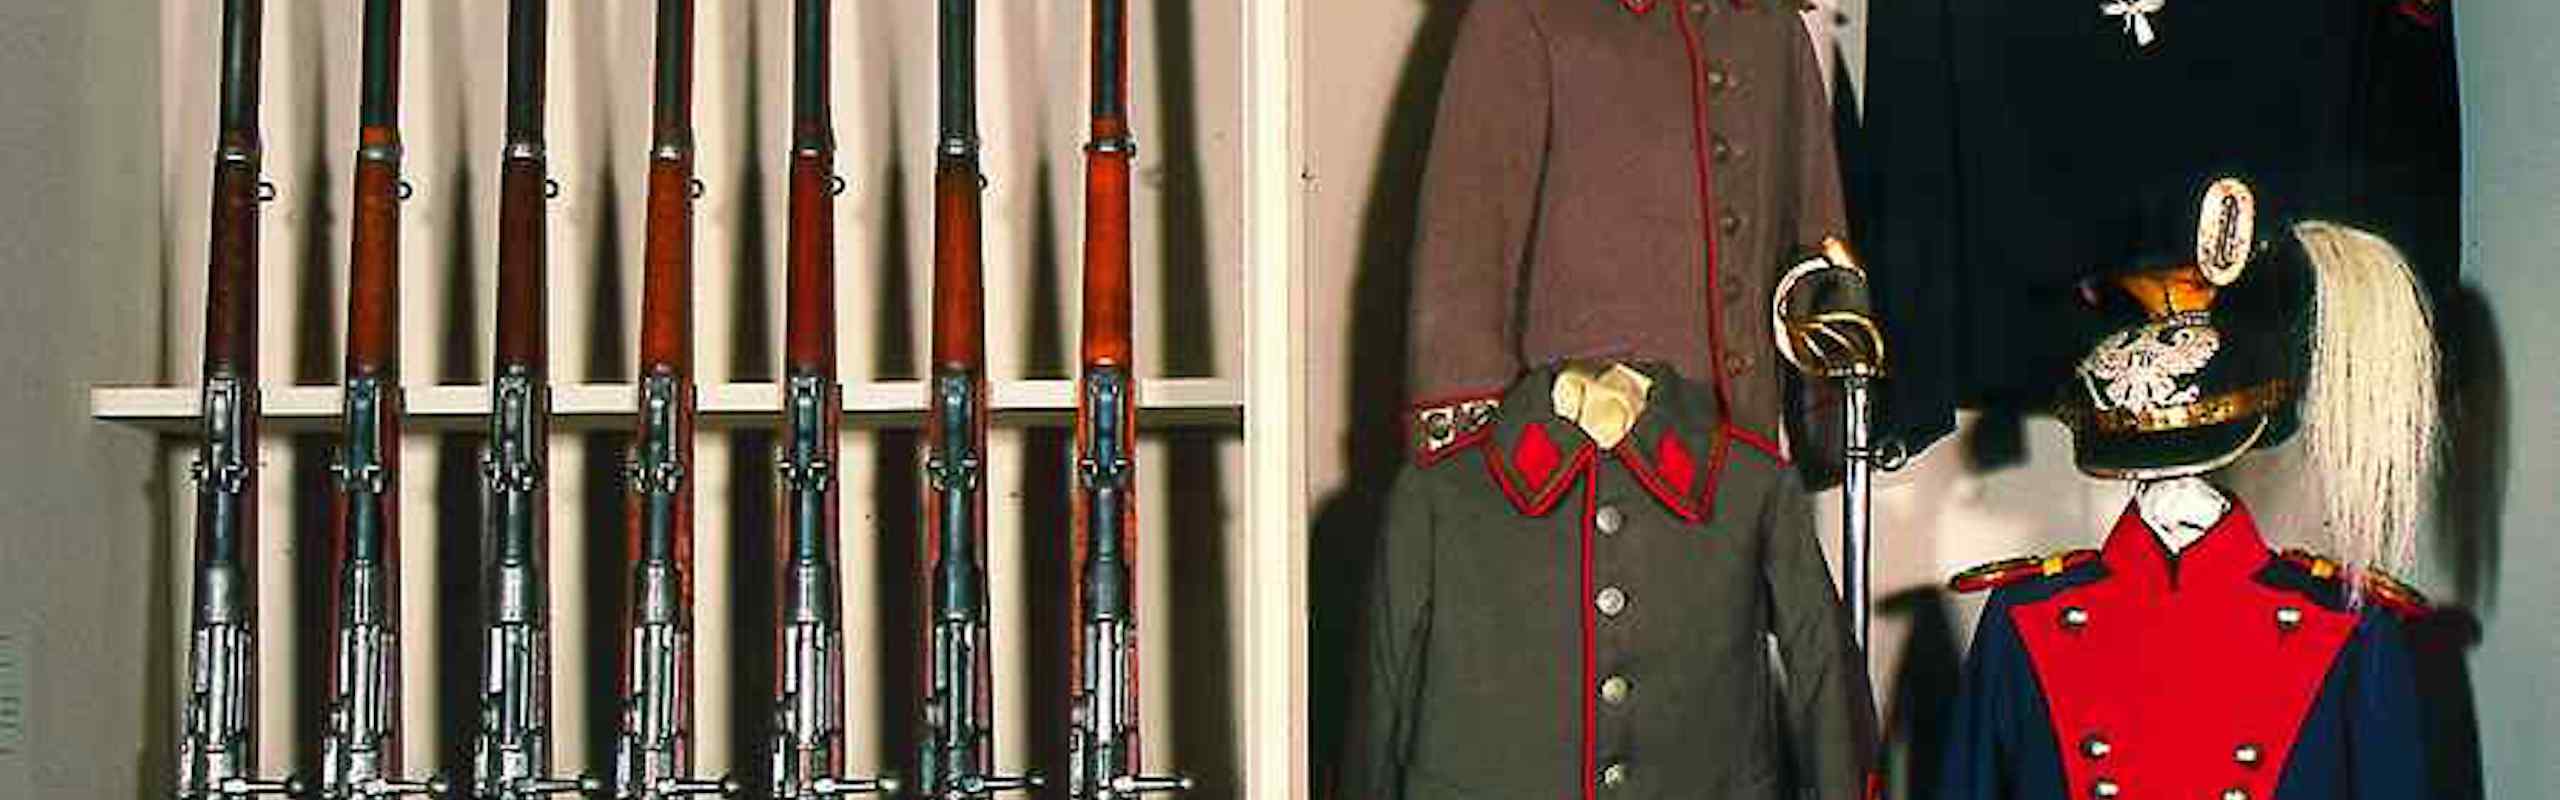 Das Bild zeigt alte ausgestellte Uniformen und Gewehre in einem Museums-Regal